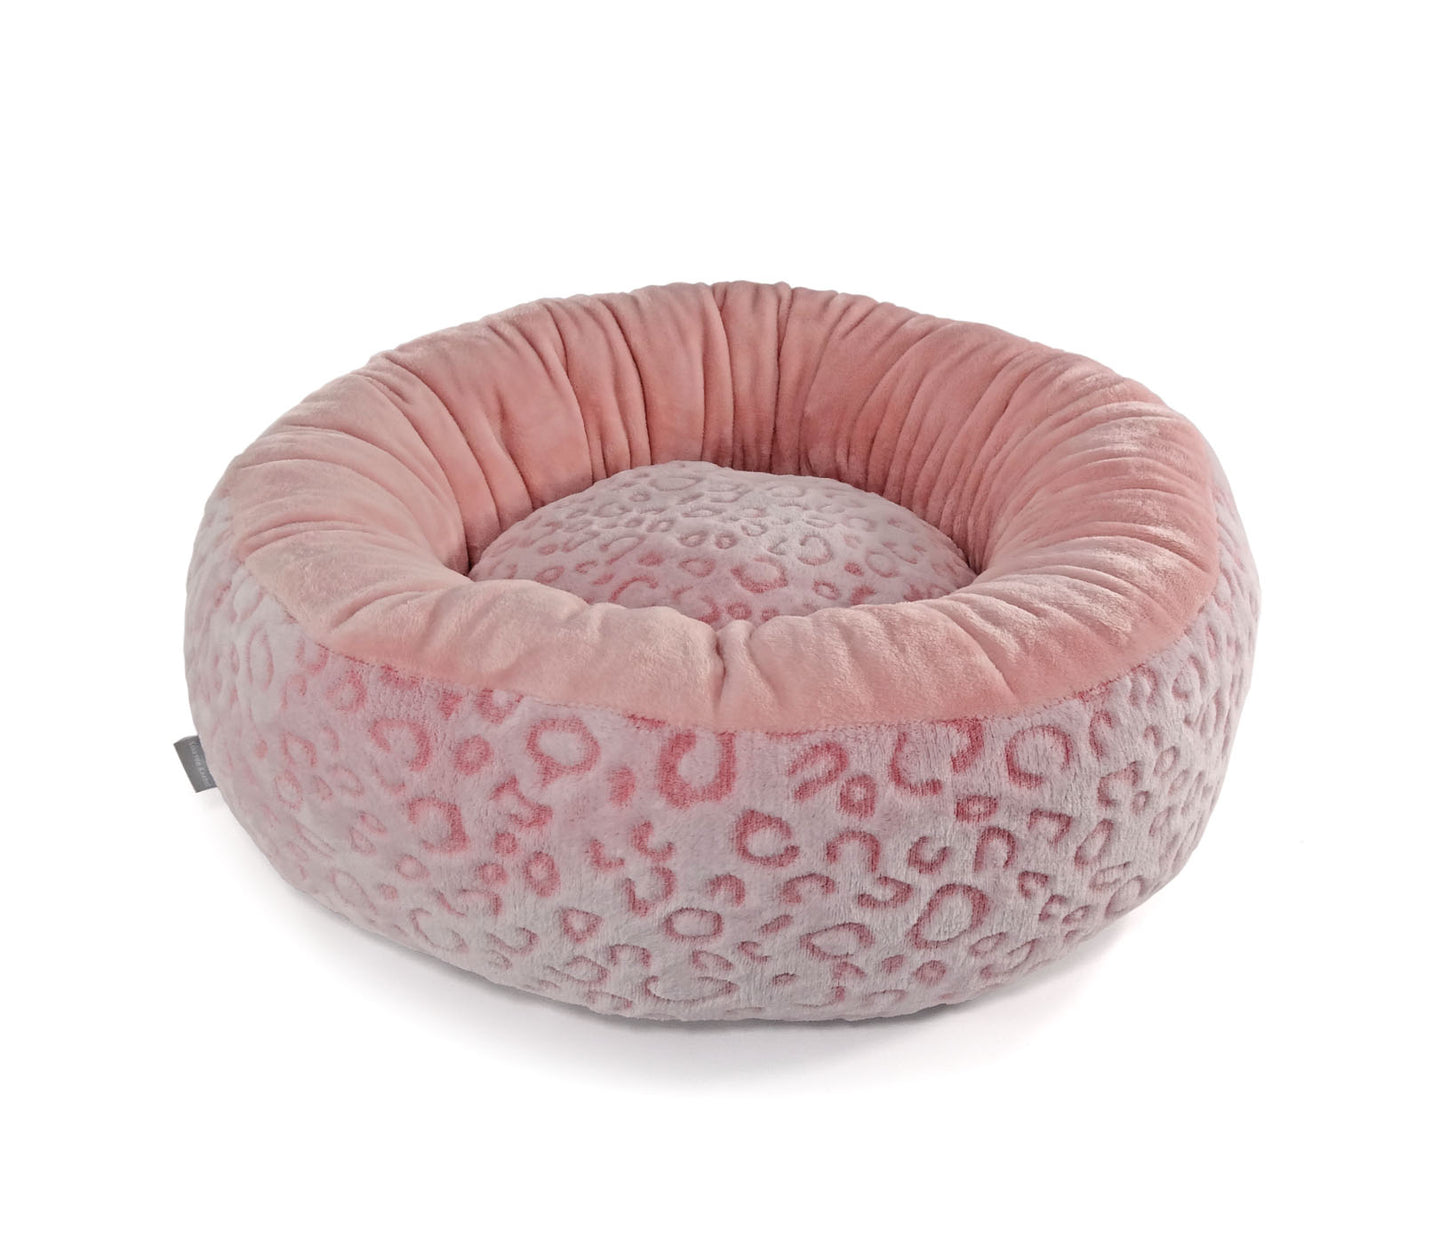 Super Soft Donut - Leo Pink Dog Bed